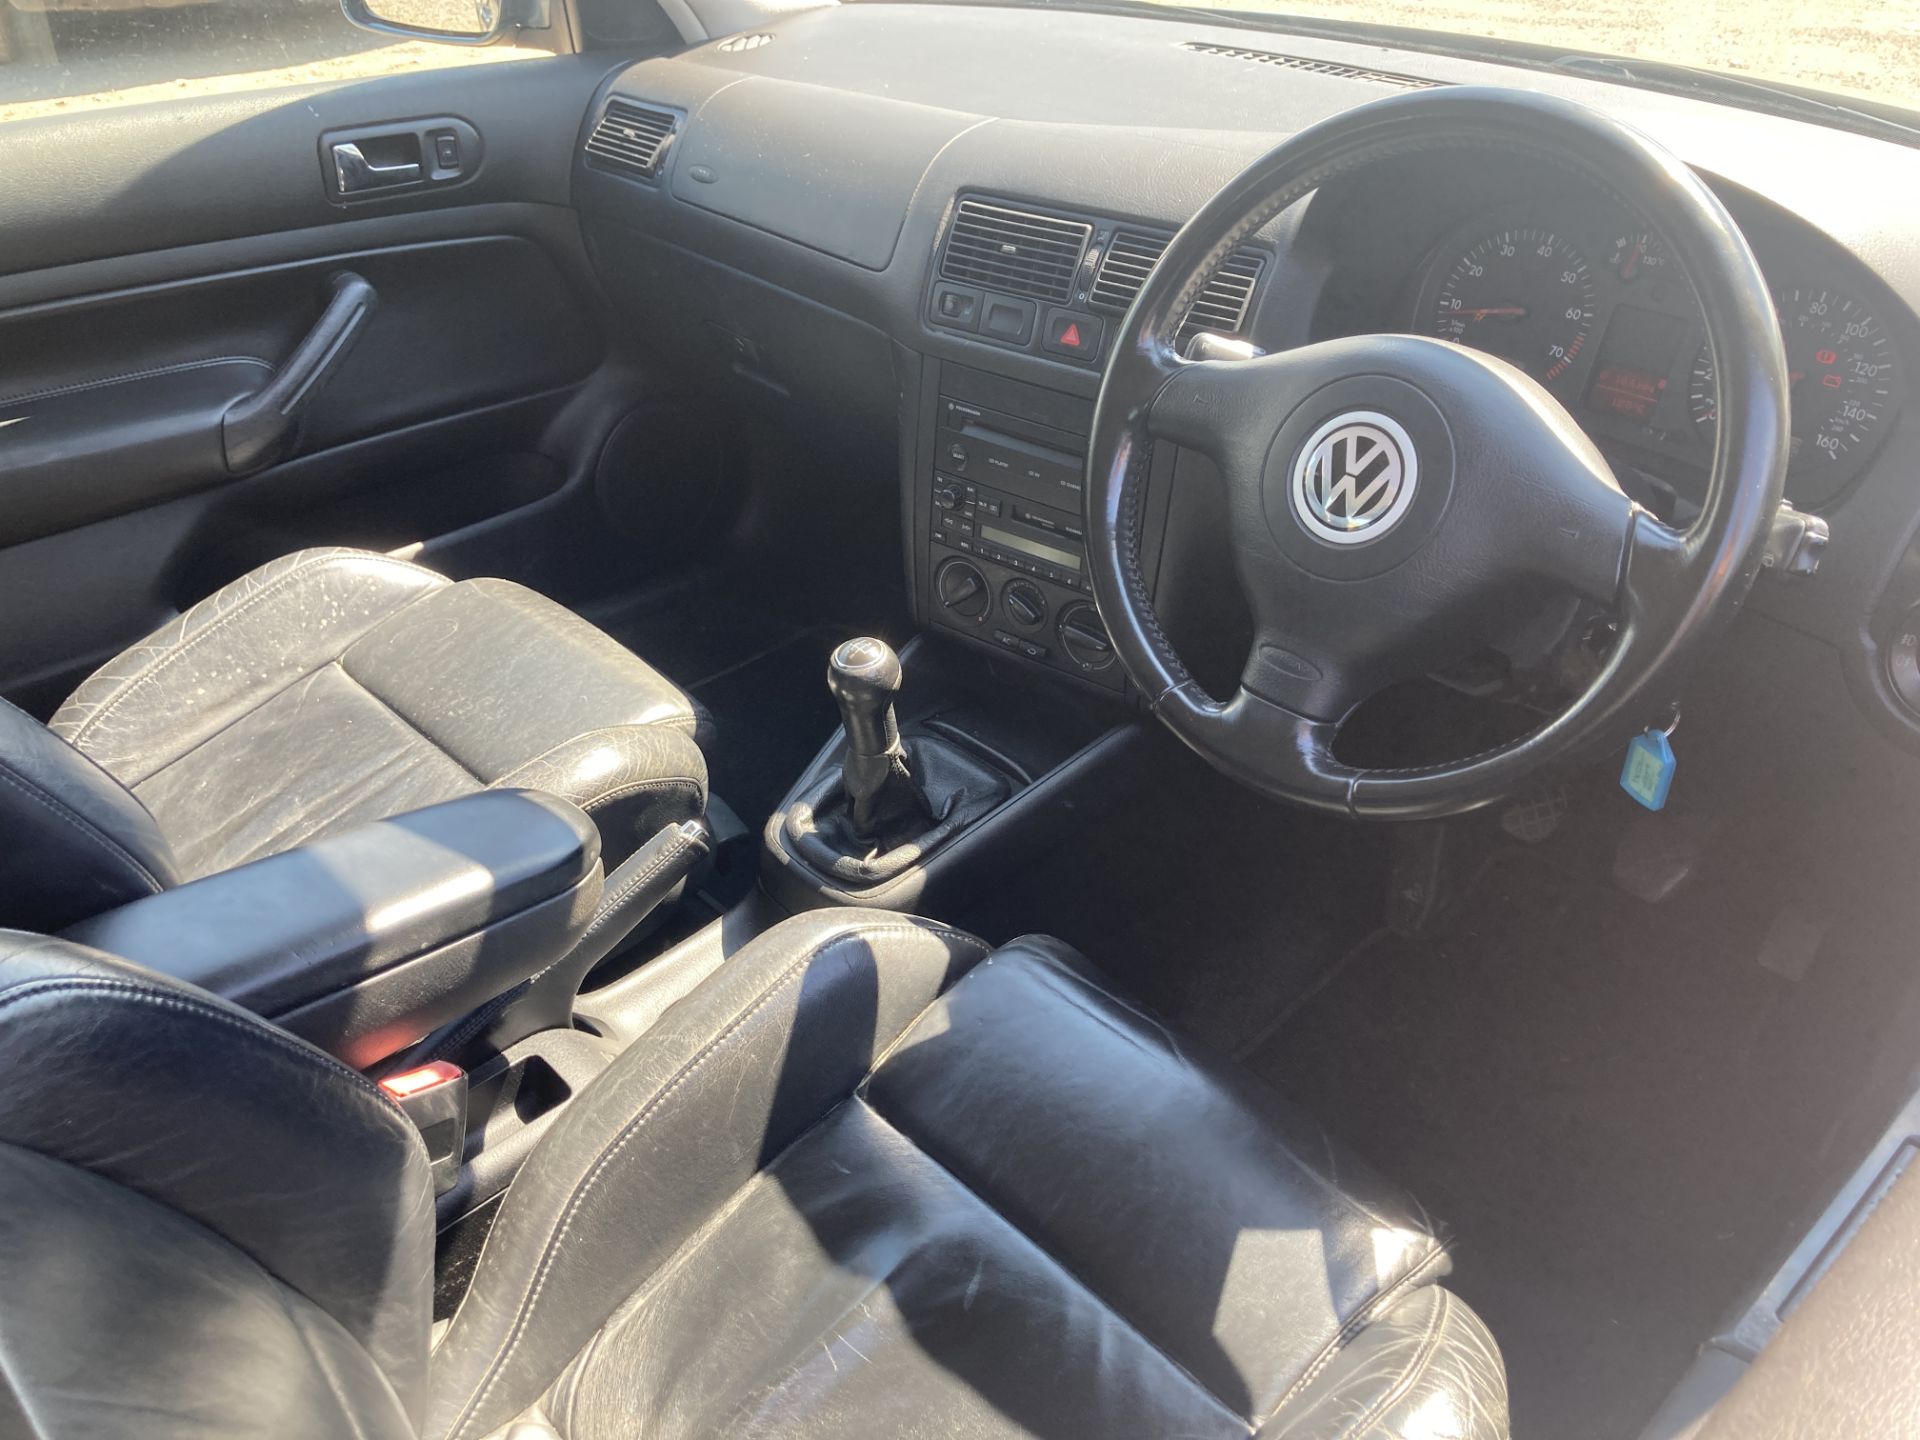 2002 Volkswagen Golf GTI - Image 9 of 10